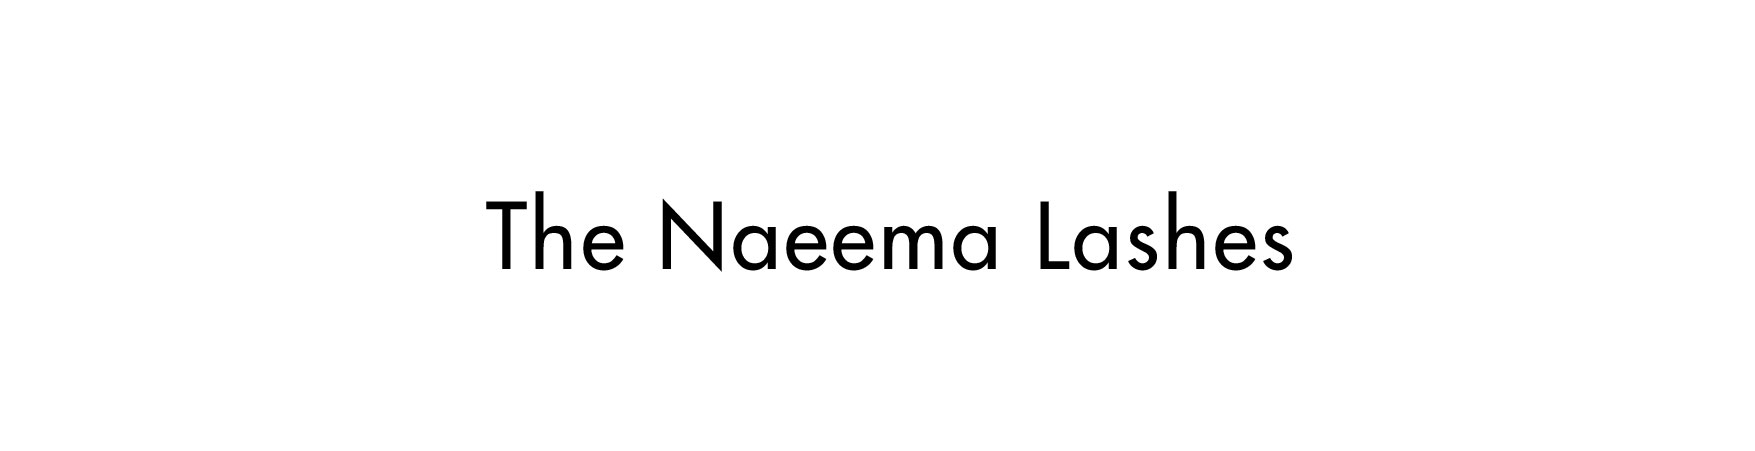 The Naeema Lashes